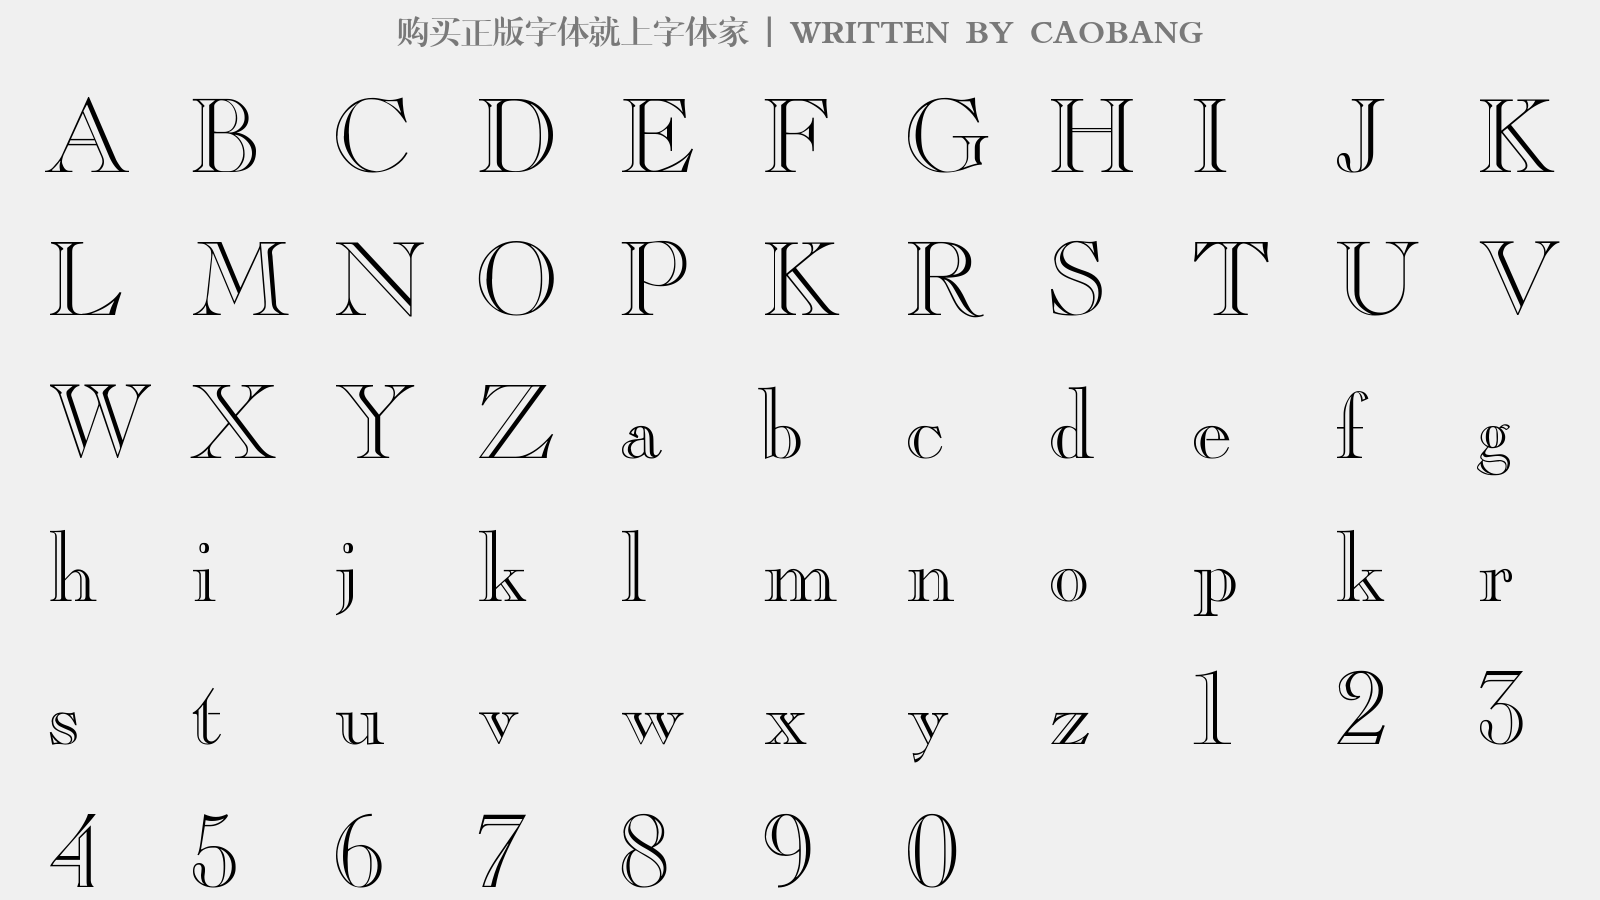 CAOBANG - 大写字母/小写字母/数字